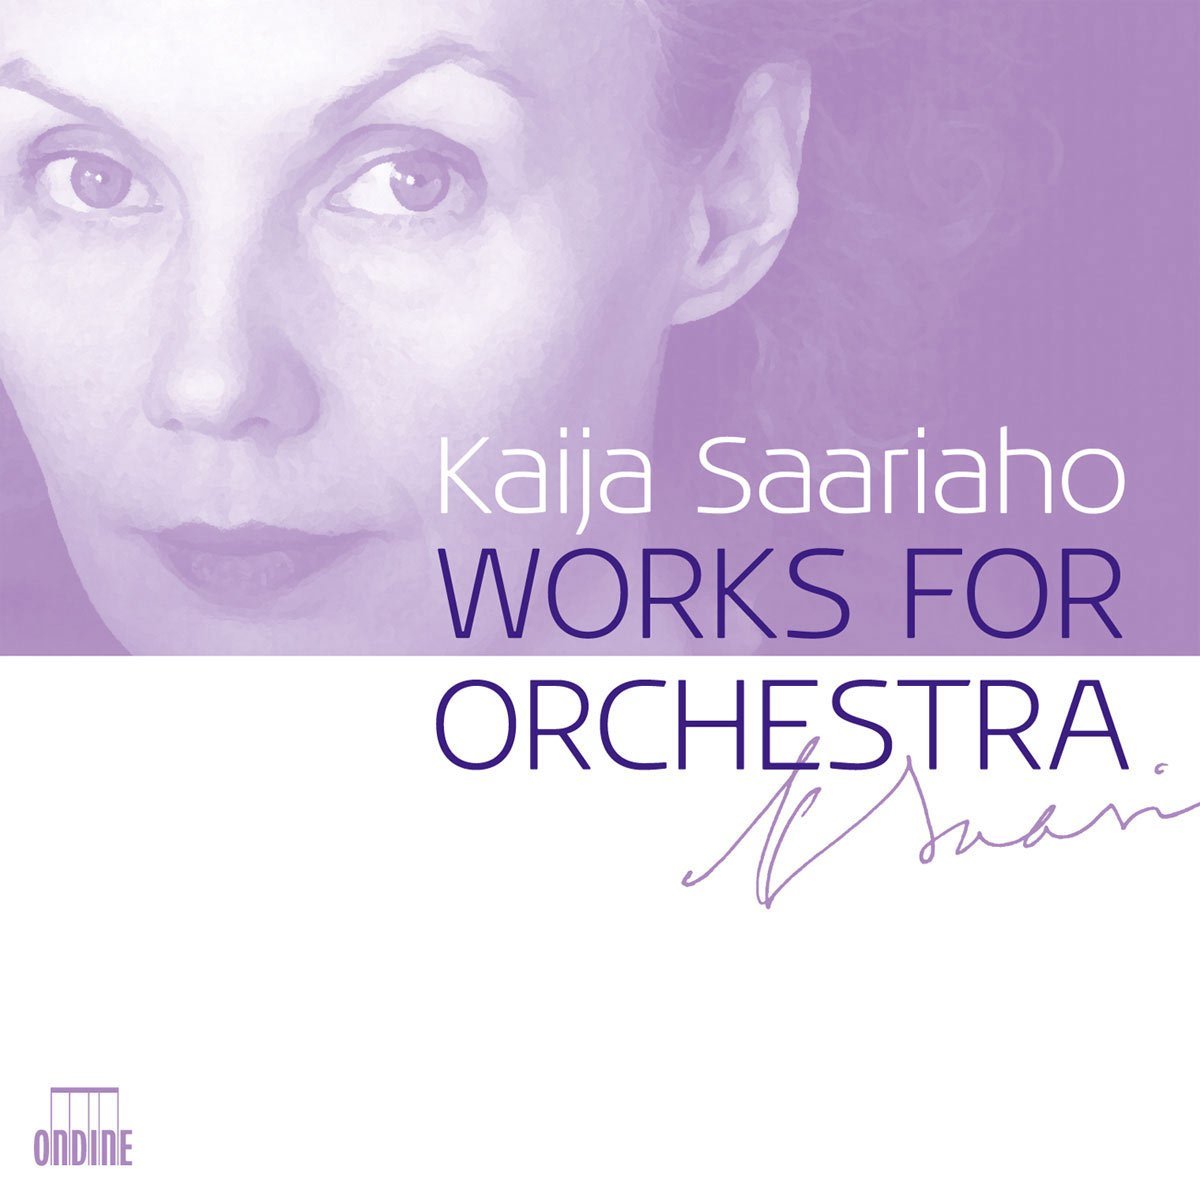 Audio Cd Kaija Saariaho - Works For Orchestra (4 Cd) NUOVO SIGILLATO, EDIZIONE DEL 01/01/2009 SUBITO DISPONIBILE